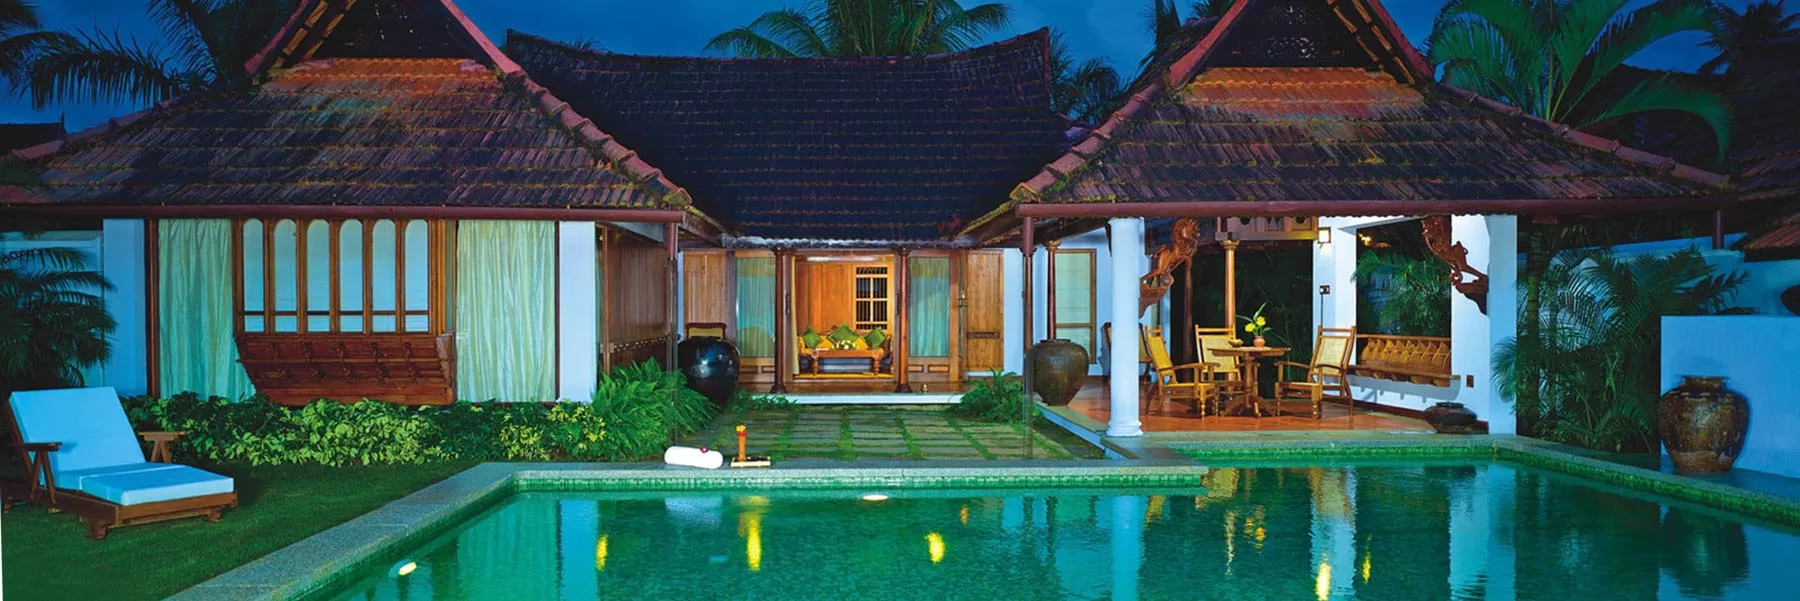 Luxury hotels in Kerala